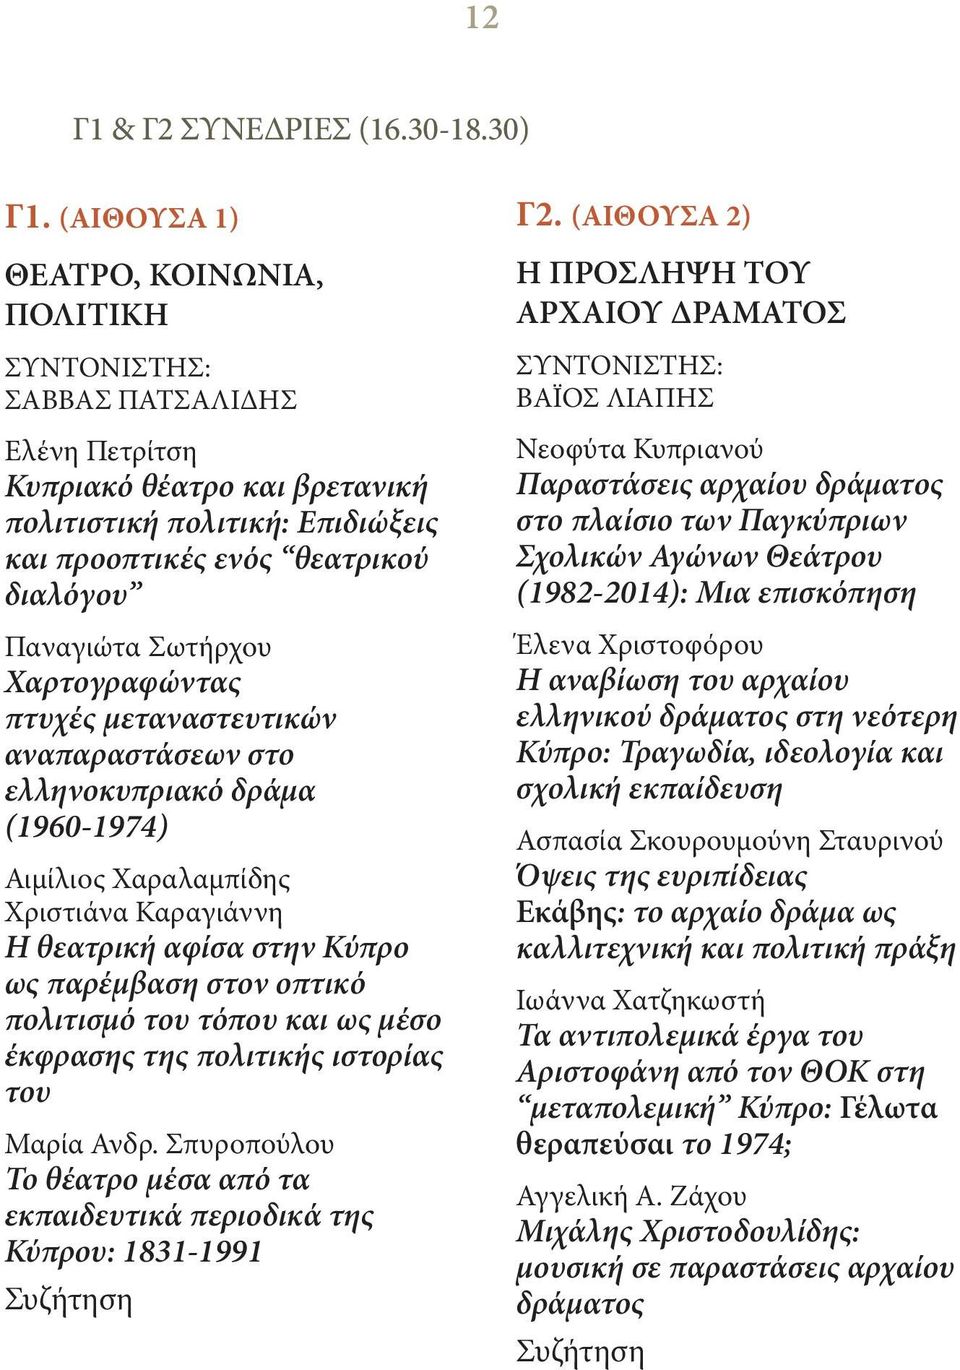 Σωτήρχου Χαρτογραφώντας πτυχές μεταναστευτικών αναπαραστάσεων στο ελληνοκυπριακό δράμα (1960-1974) Αιμίλιος Χαραλαμπίδης Χριστιάνα Καραγιάννη Η θεατρική αφίσα στην Κύπρο ως παρέμβαση στον οπτικό